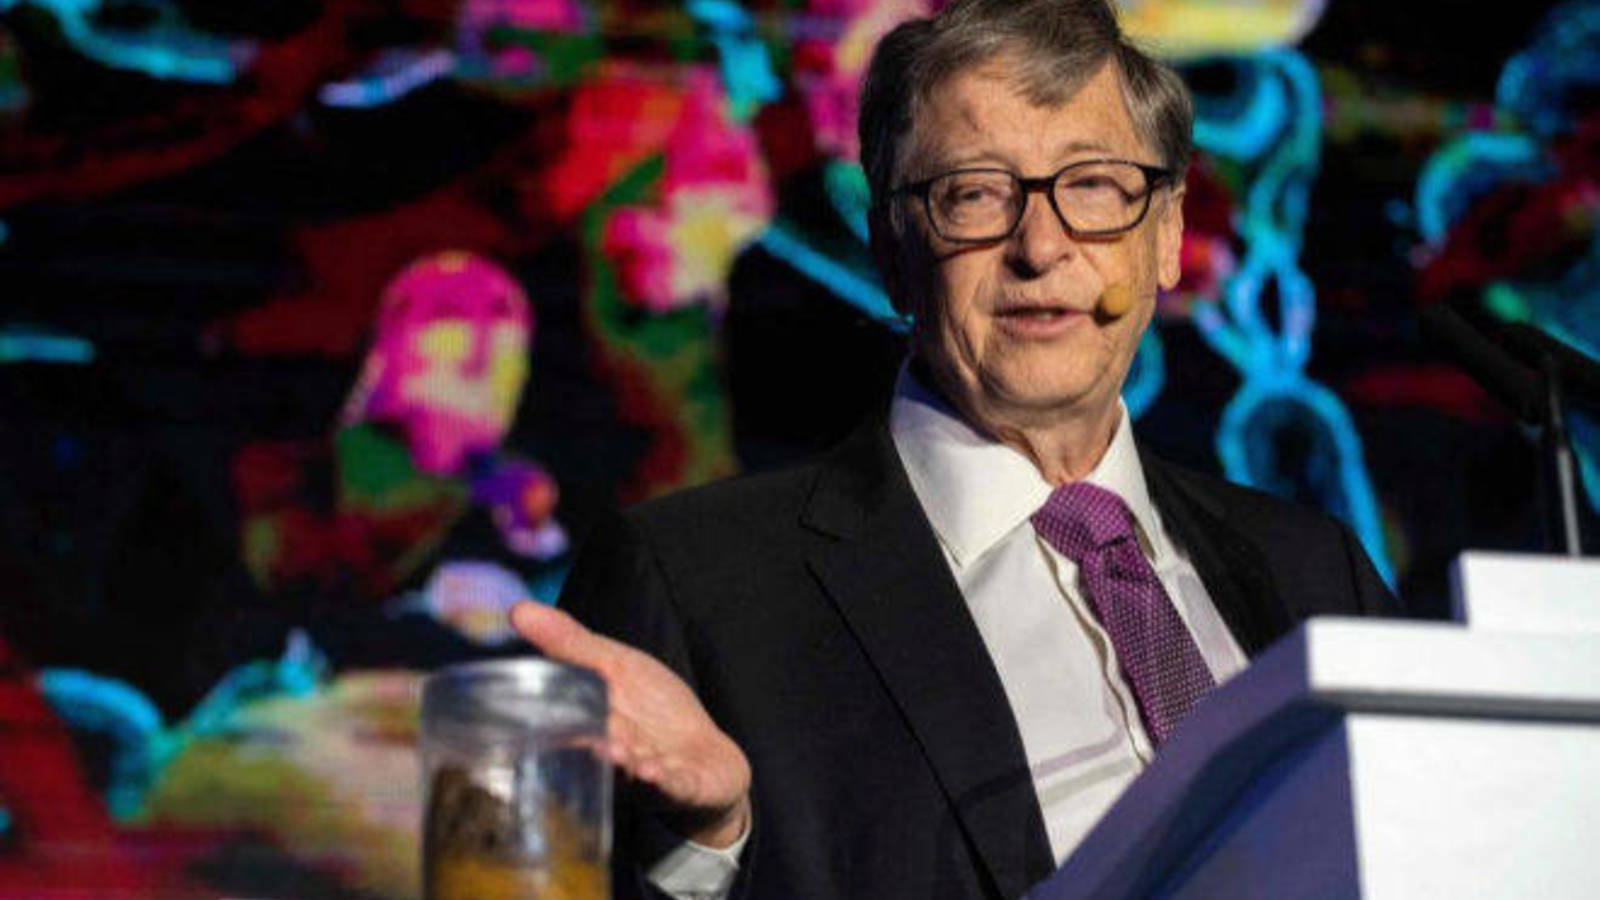 10 inventos que facilitarán la vida según Bill Gates